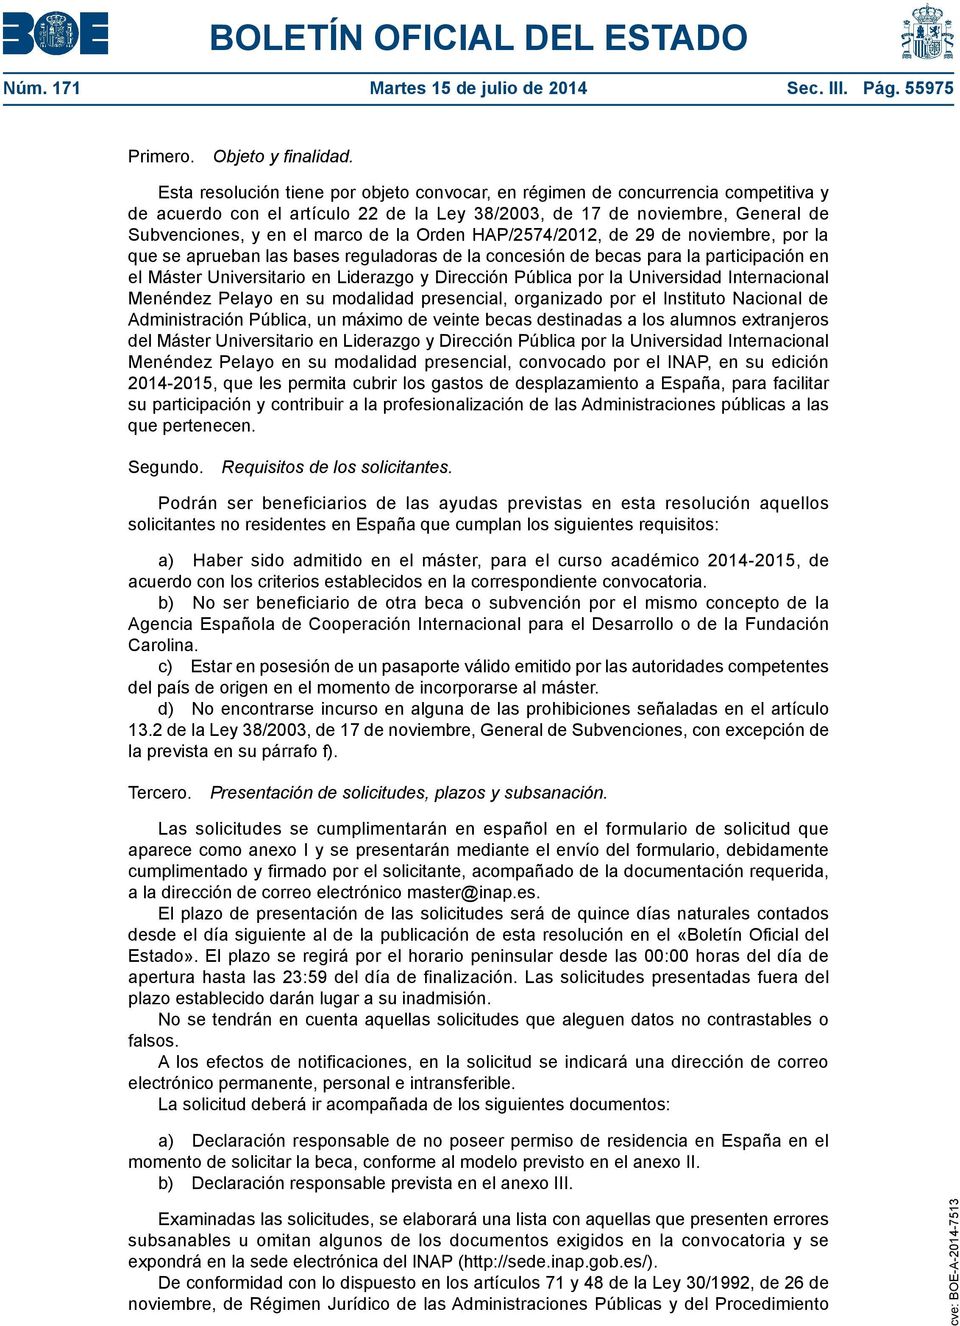 Orden HAP/2574/2012, de 29 de noviembre, por la que se aprueban las bases reguladoras de la concesión de becas para la participación en el Máster Universitario en Liderazgo y Dirección Pública por la